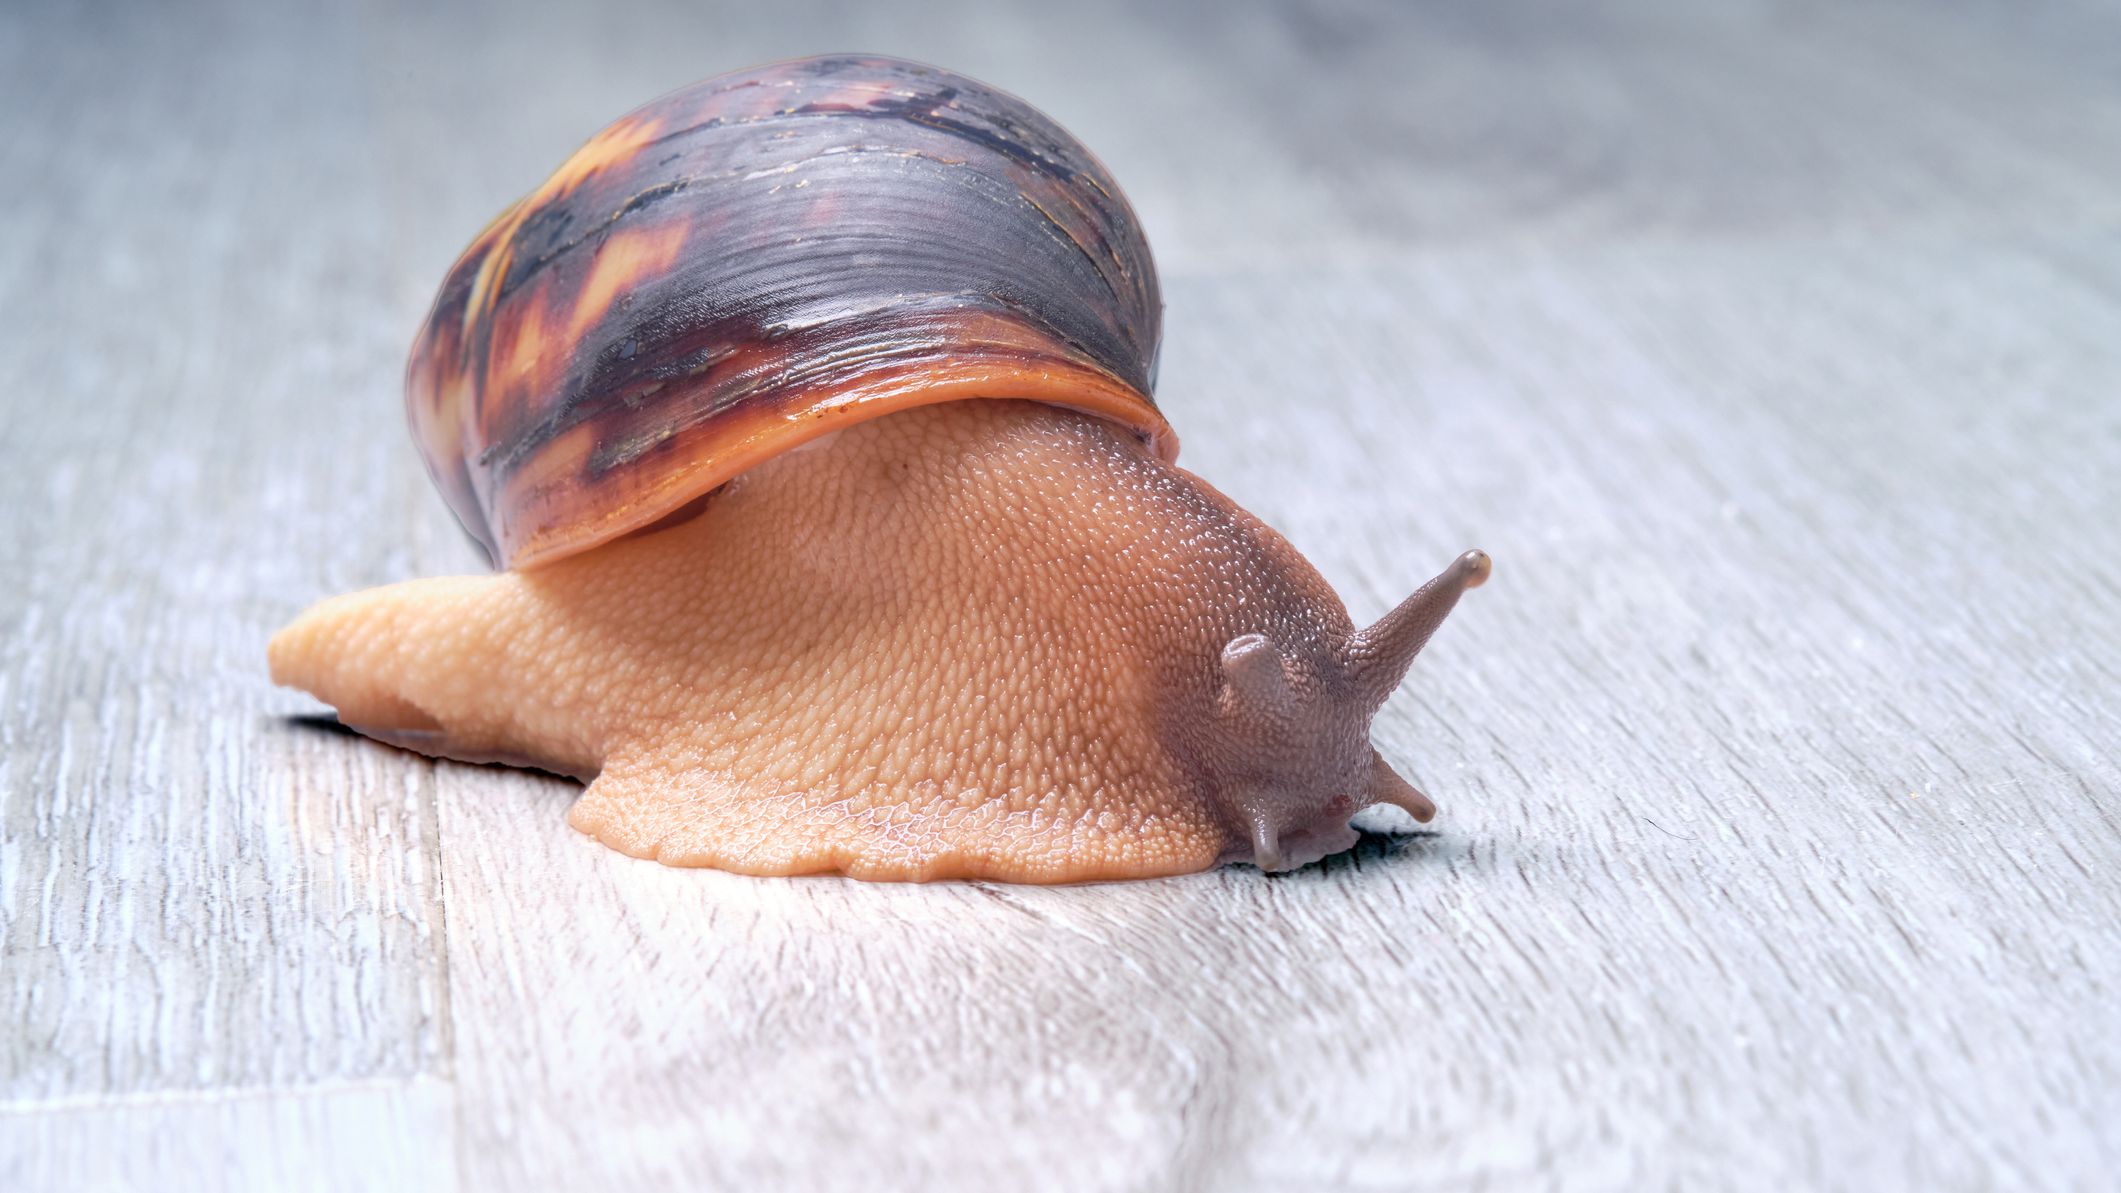 Why do my snails keep sleeping?